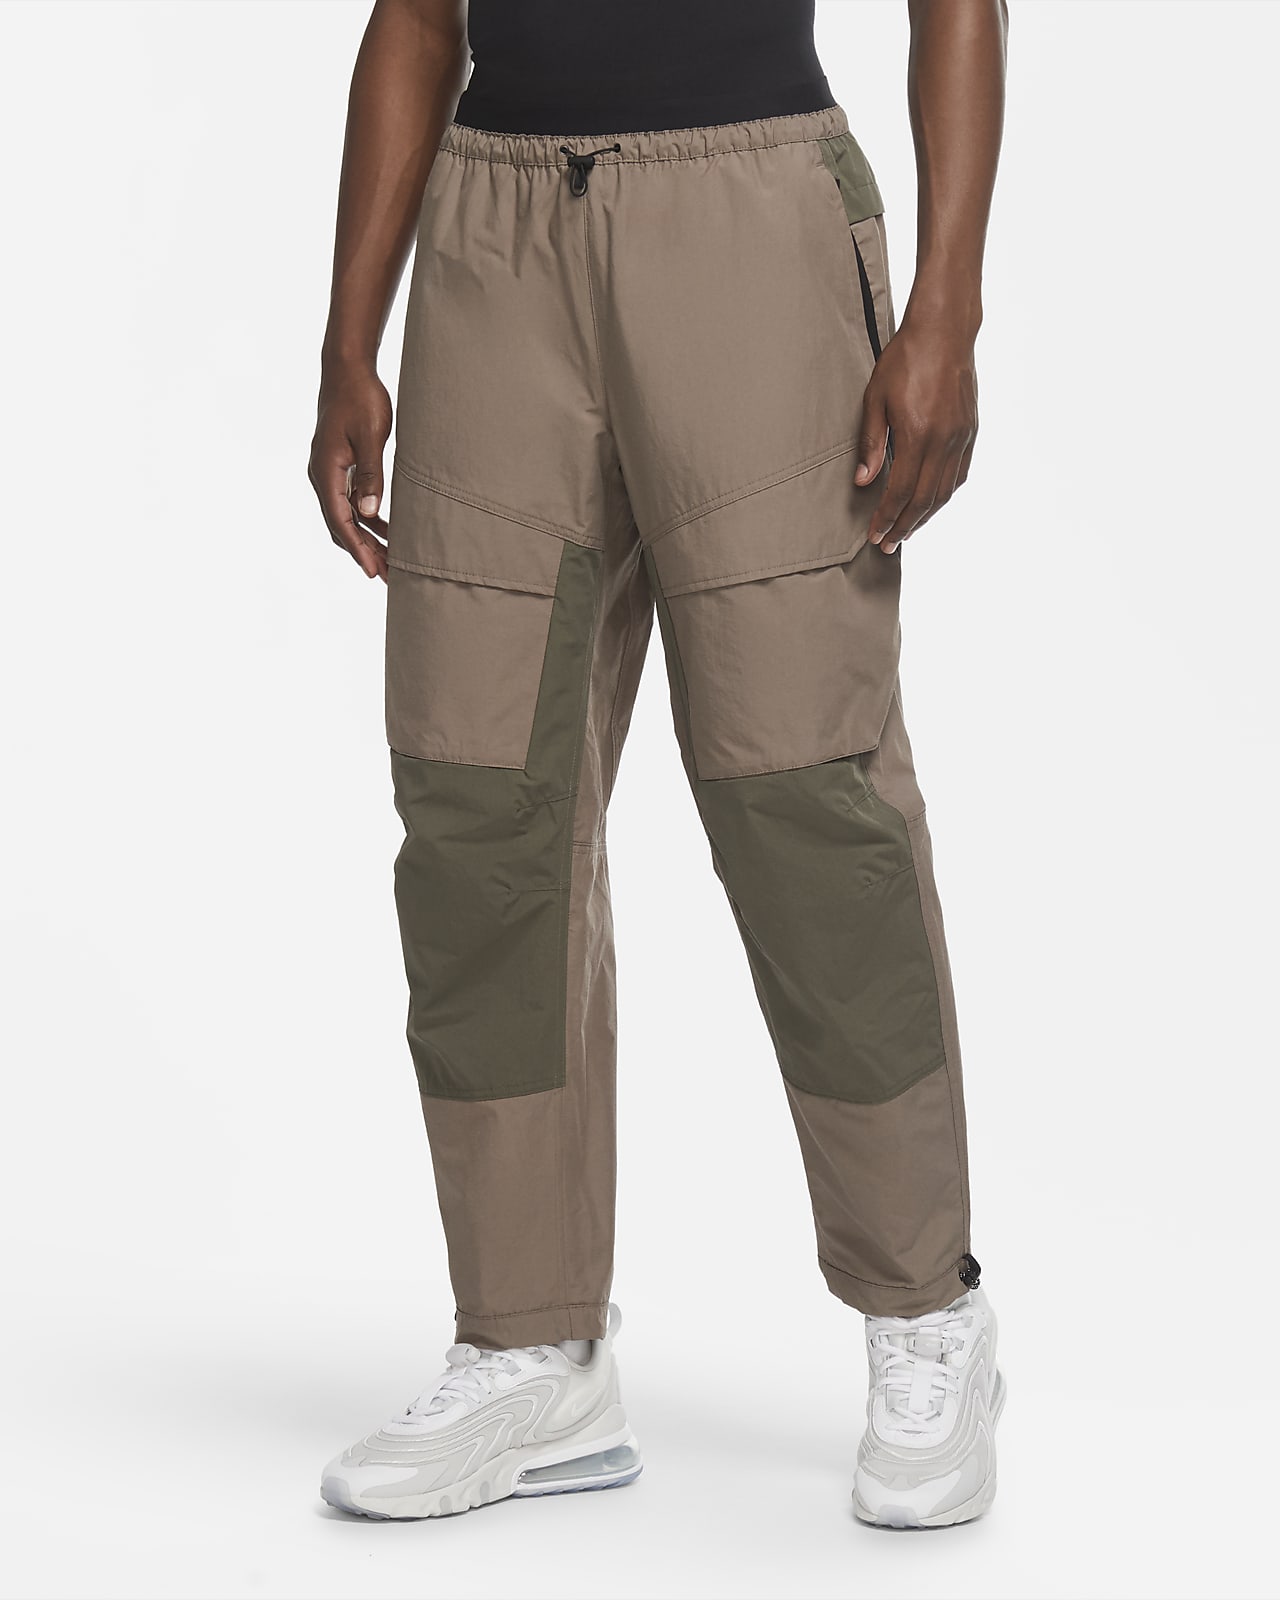 nike sportswear tech pack men's woven cargo trousers